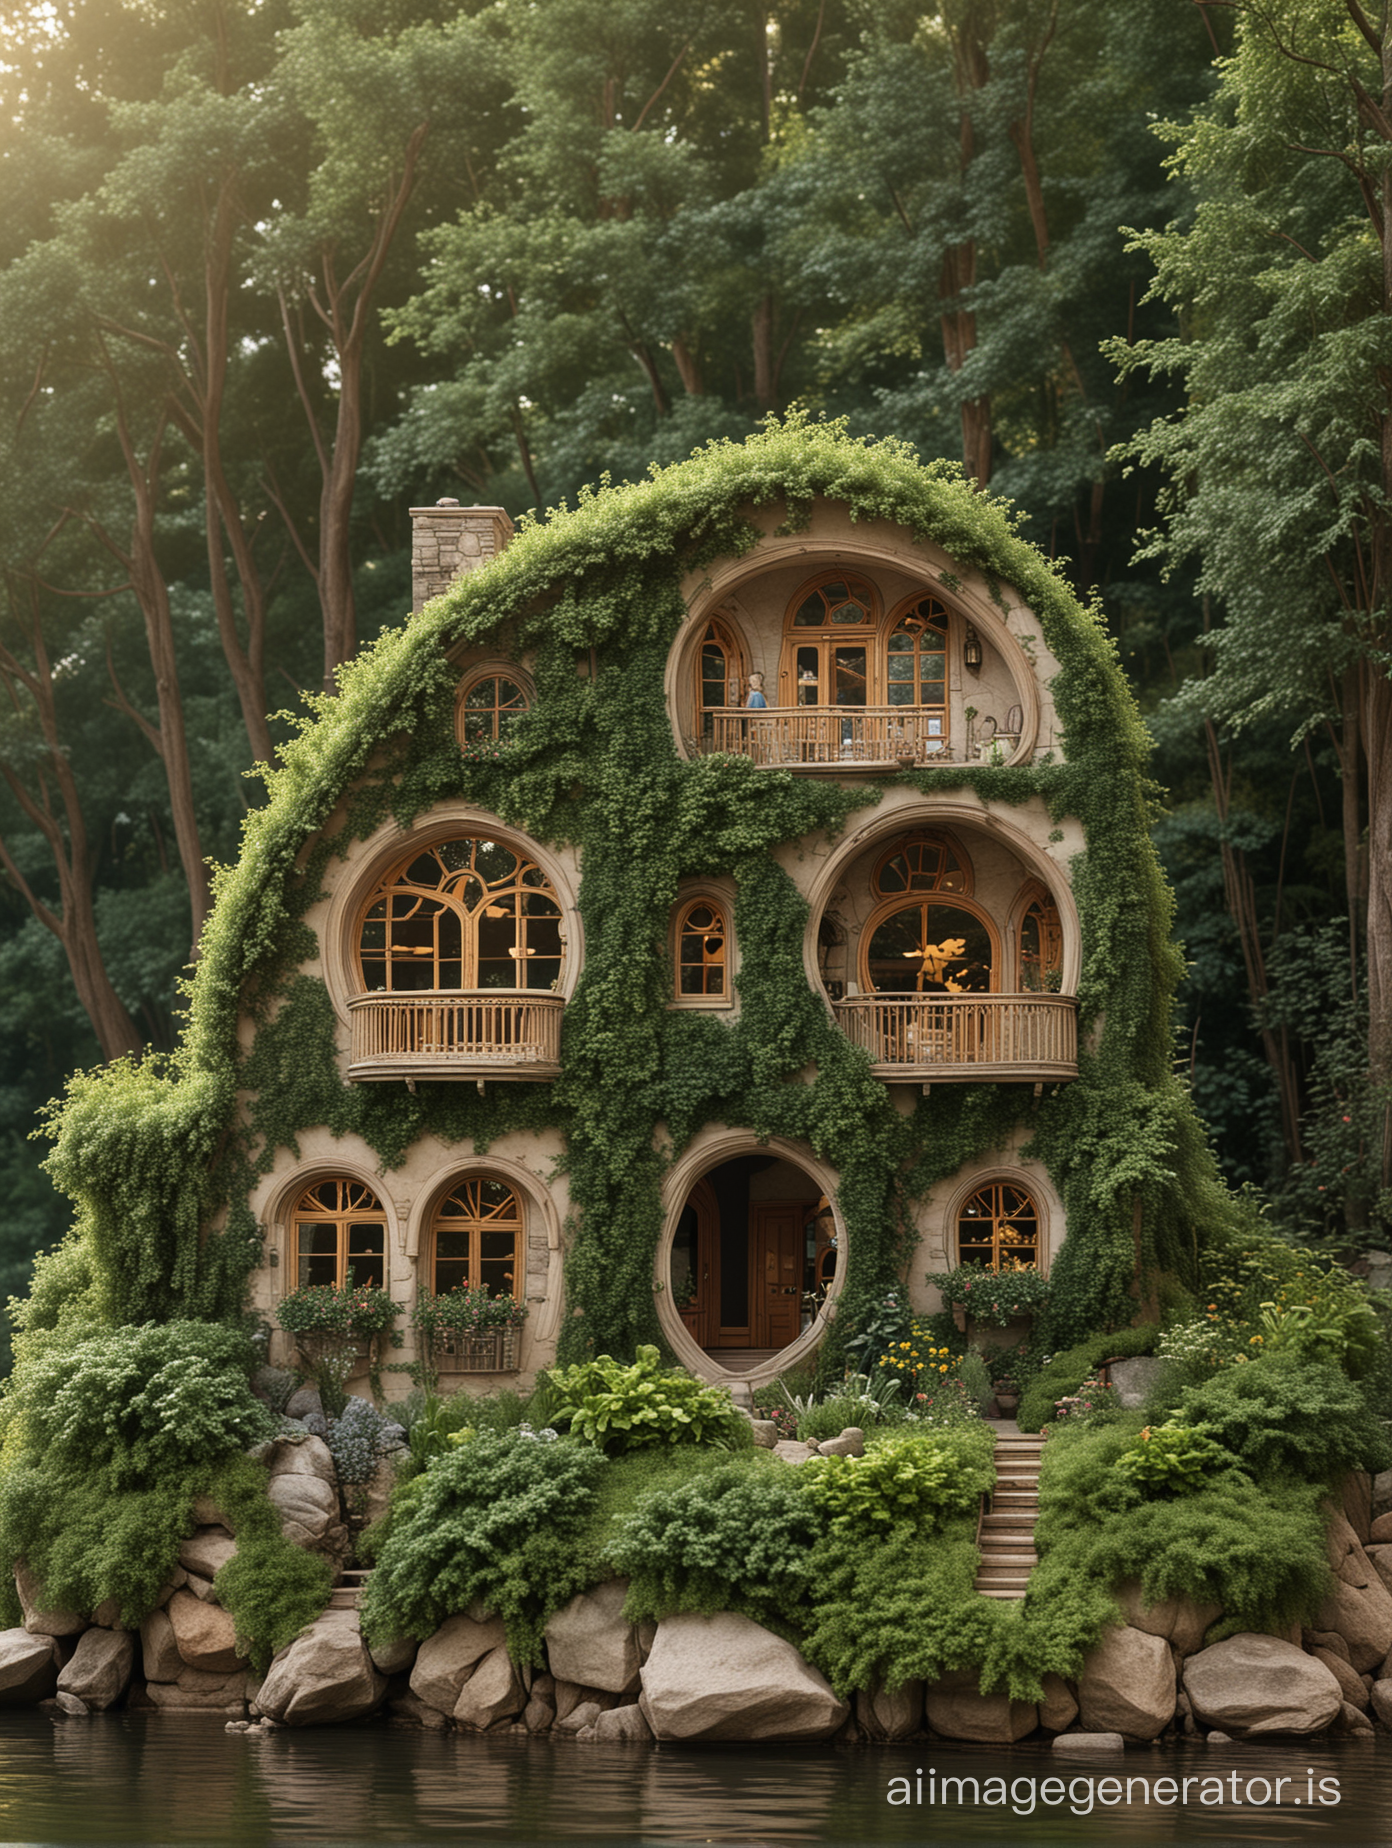 Maison poupée et magi que de 2 étages avec des fenêtres ovales  faite des arbres vivants situé sur une colline donnant sur une rivière .